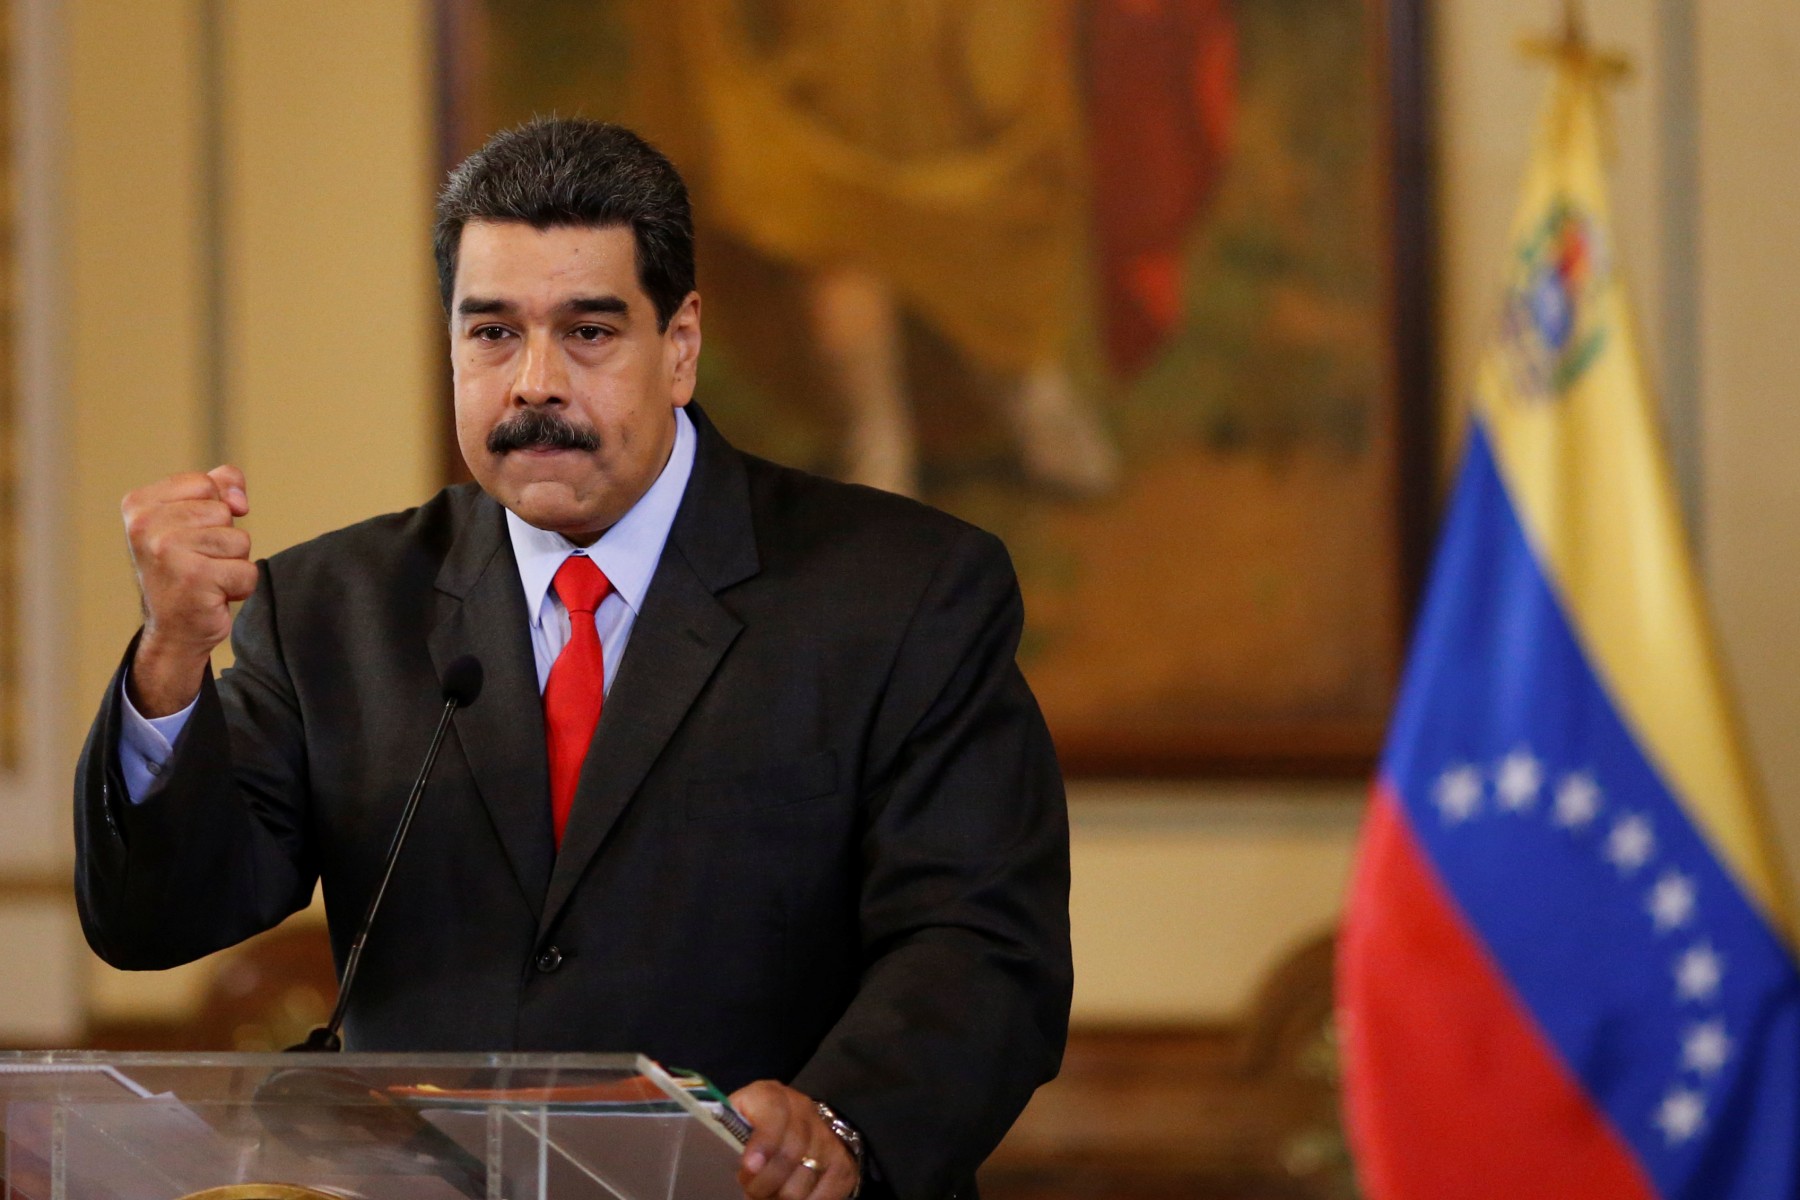 Comenzó la campaña presidencial, y, claro, con ella las promesas. Maduro habla de “prosperidad” y Henri Falcón asegura que de ganar hará un gobierno de “inclusión”